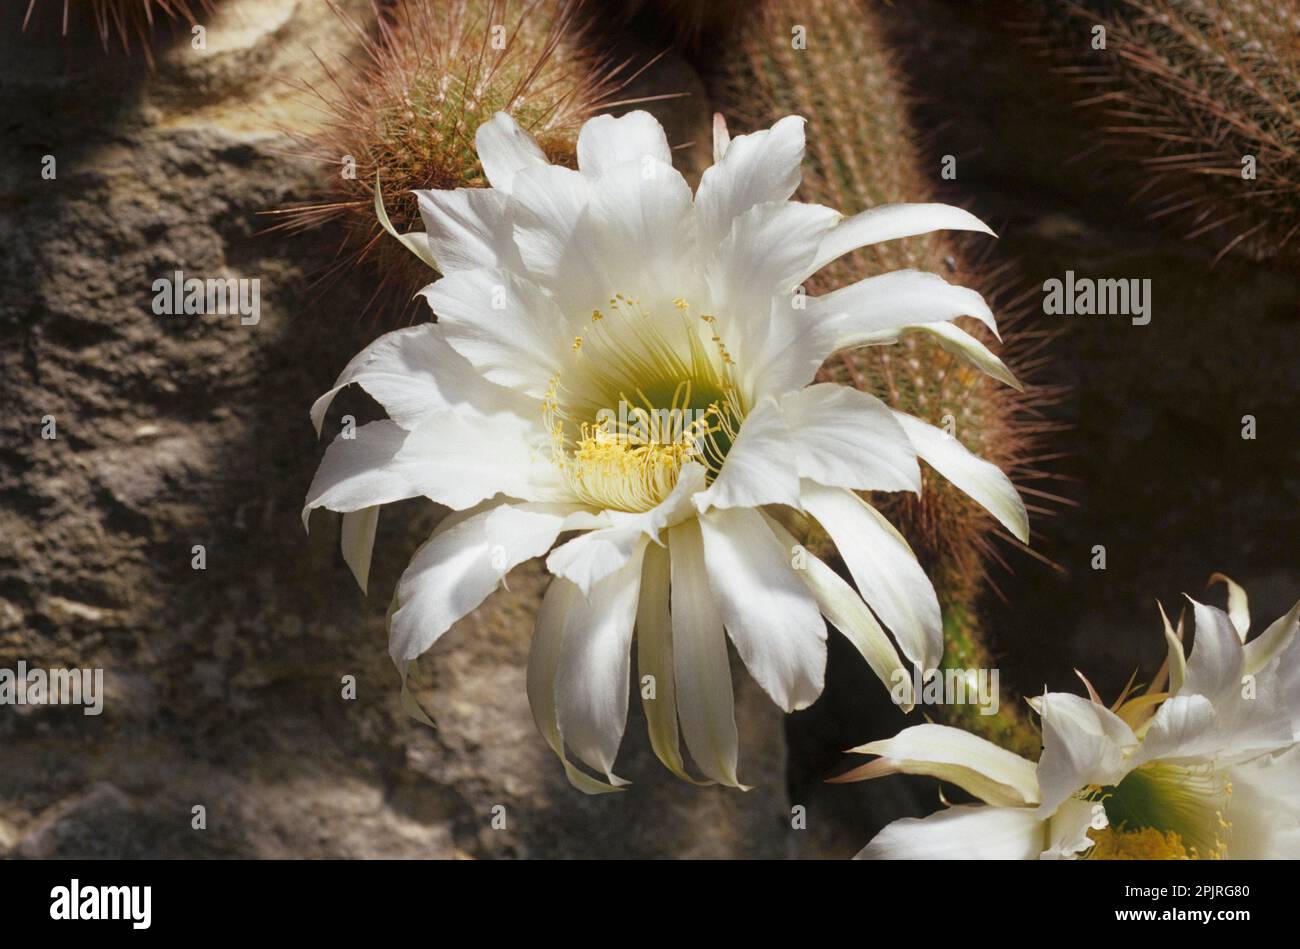 Cactus (Echinopsis huascha) Stock Photo